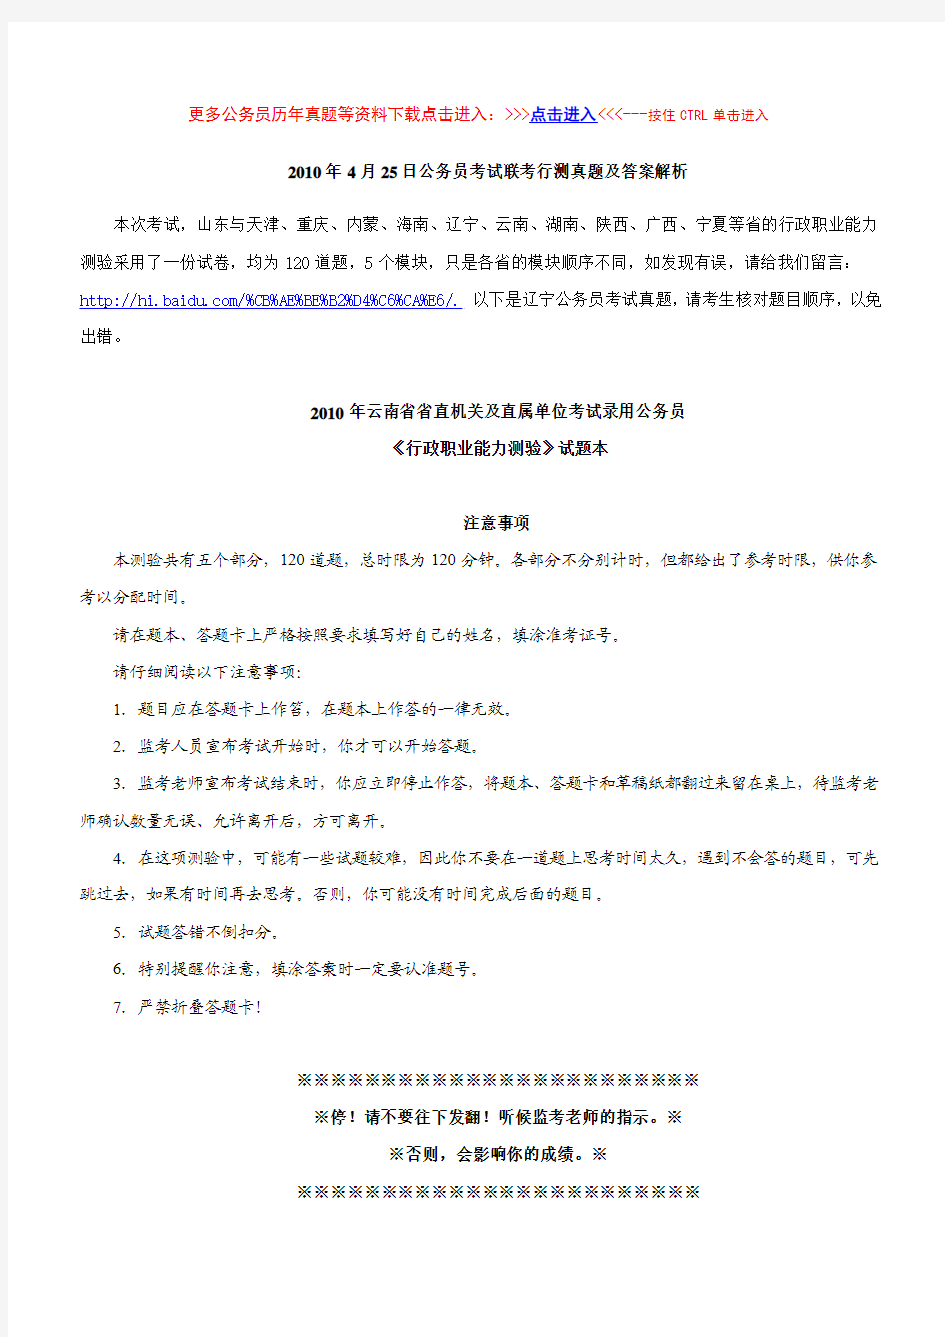 2010年4月25日云南省公务员考试行测真题及解析